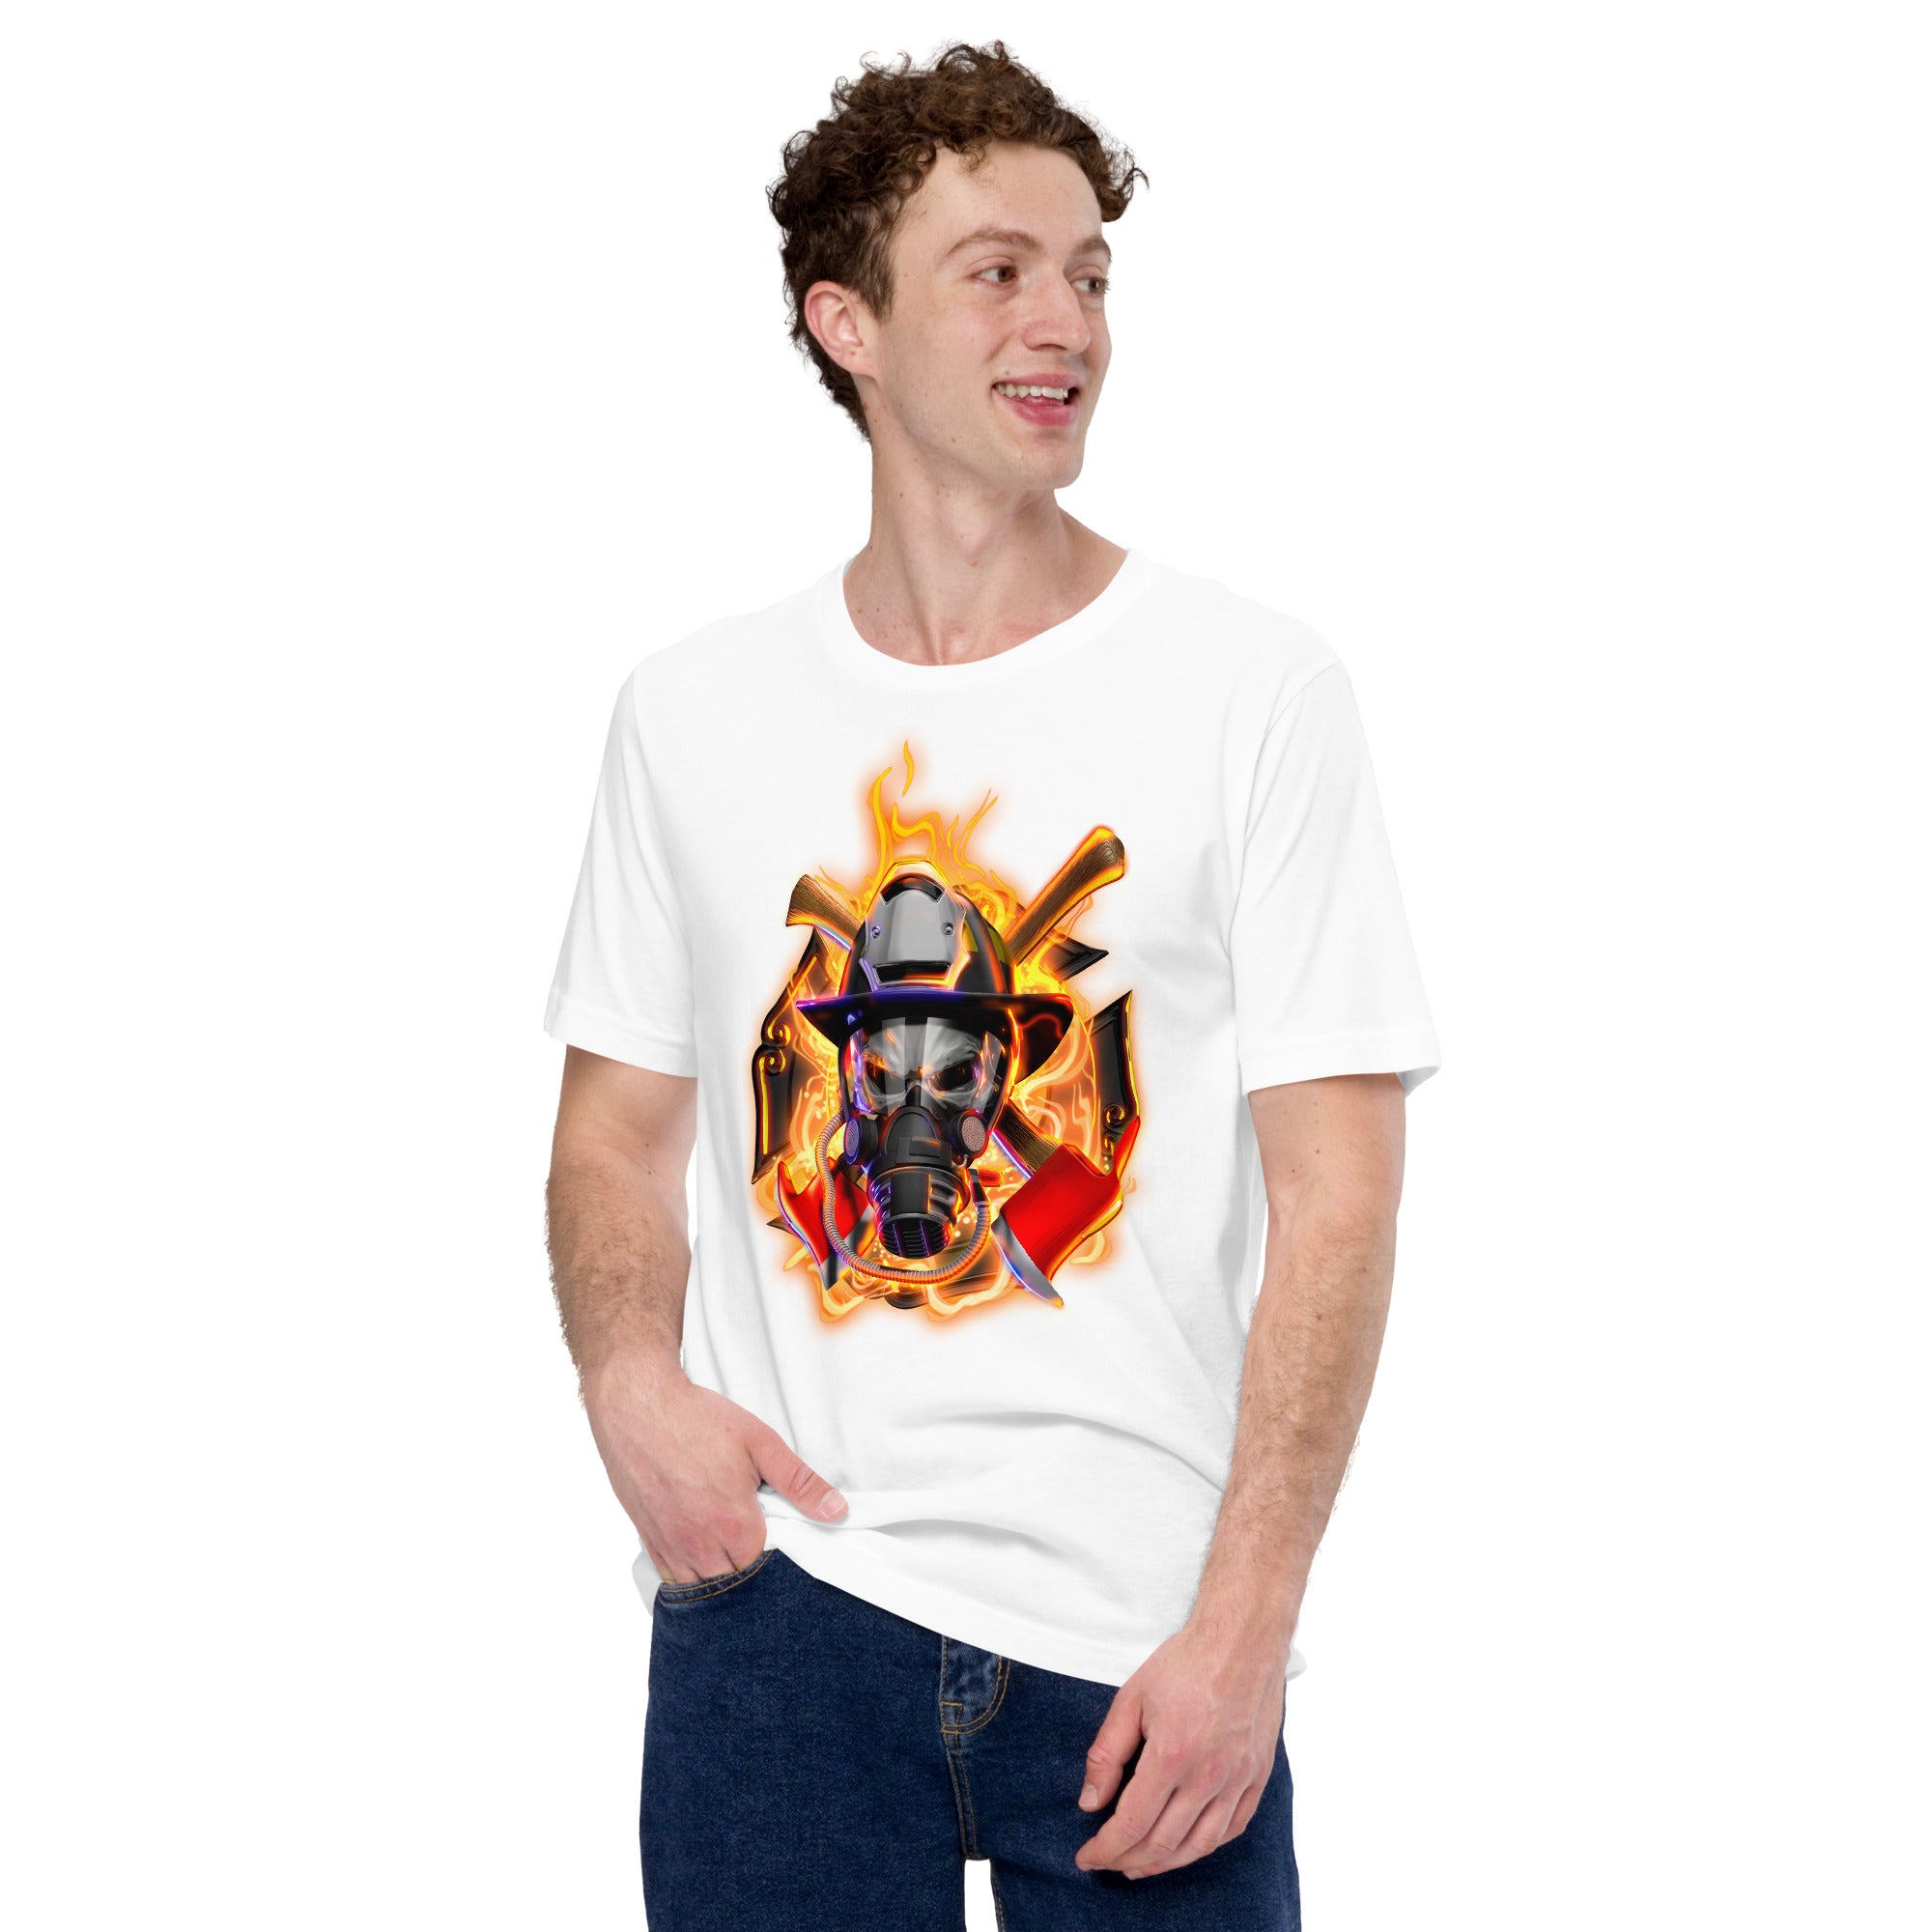 Feuerwehrmann-Schädel Herren-T-Shirt